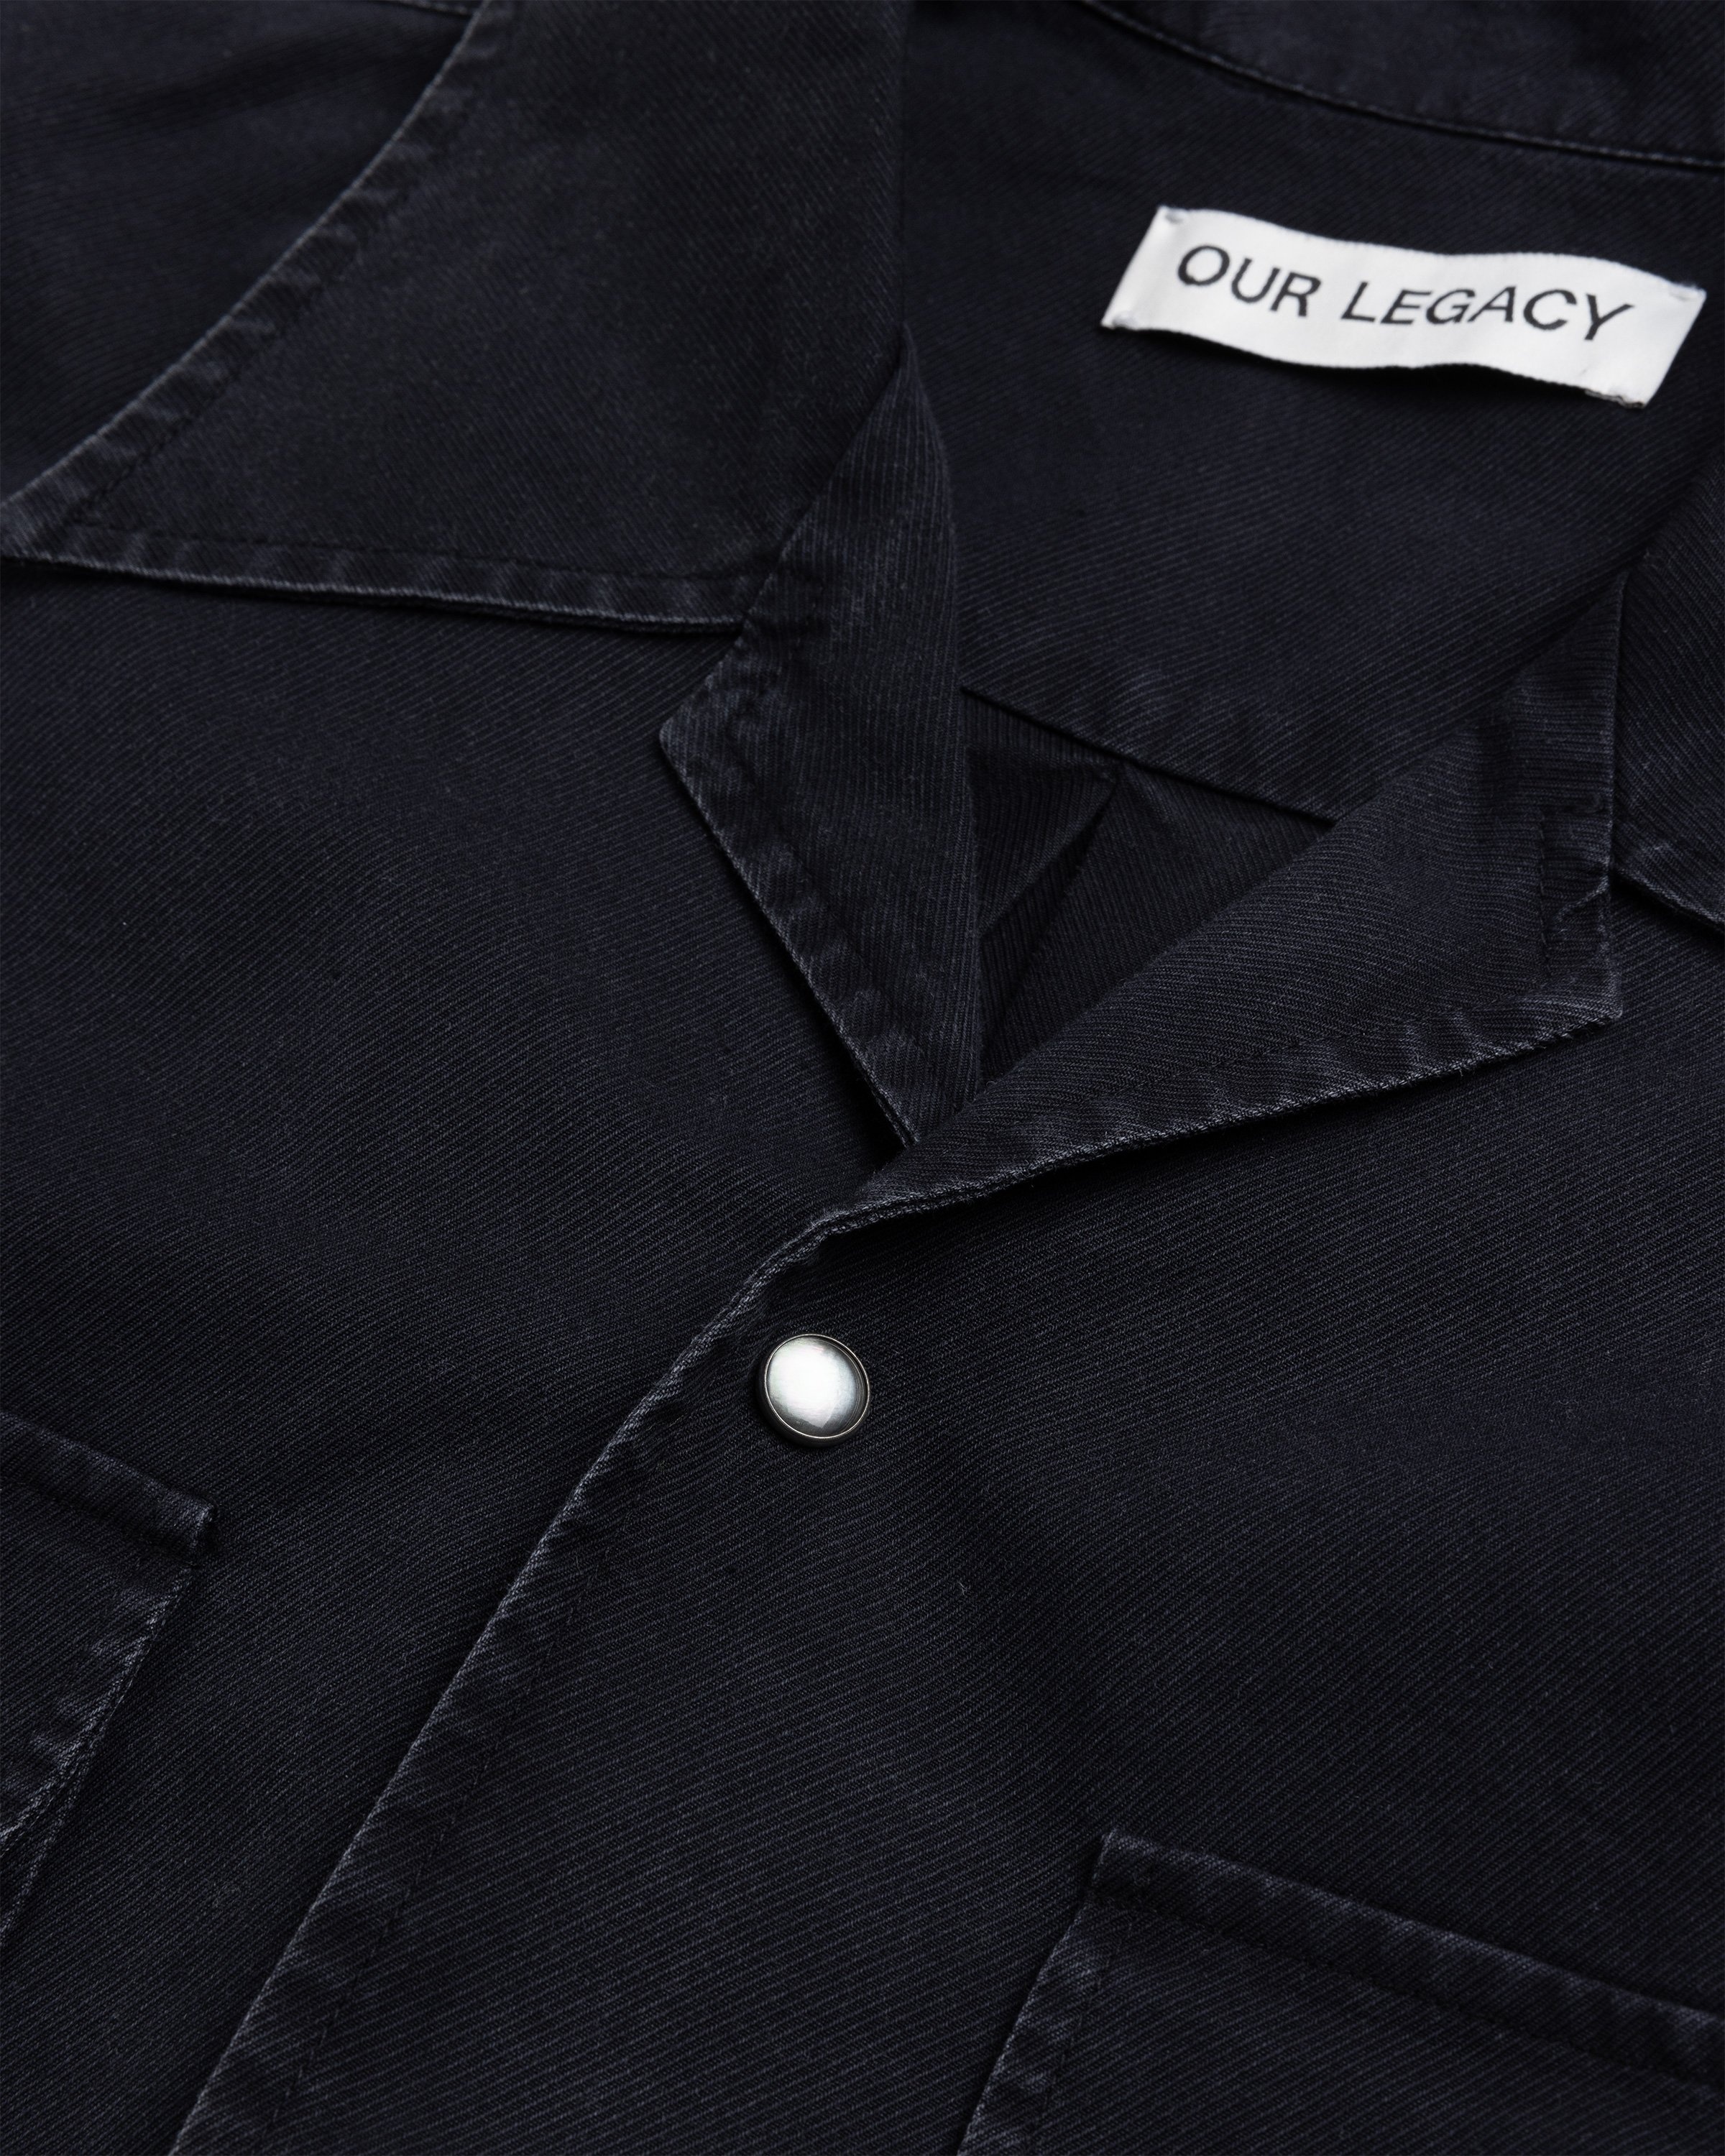 Our Legacy – Poco Shirt Black Cosmic Twill | Highsnobiety Shop